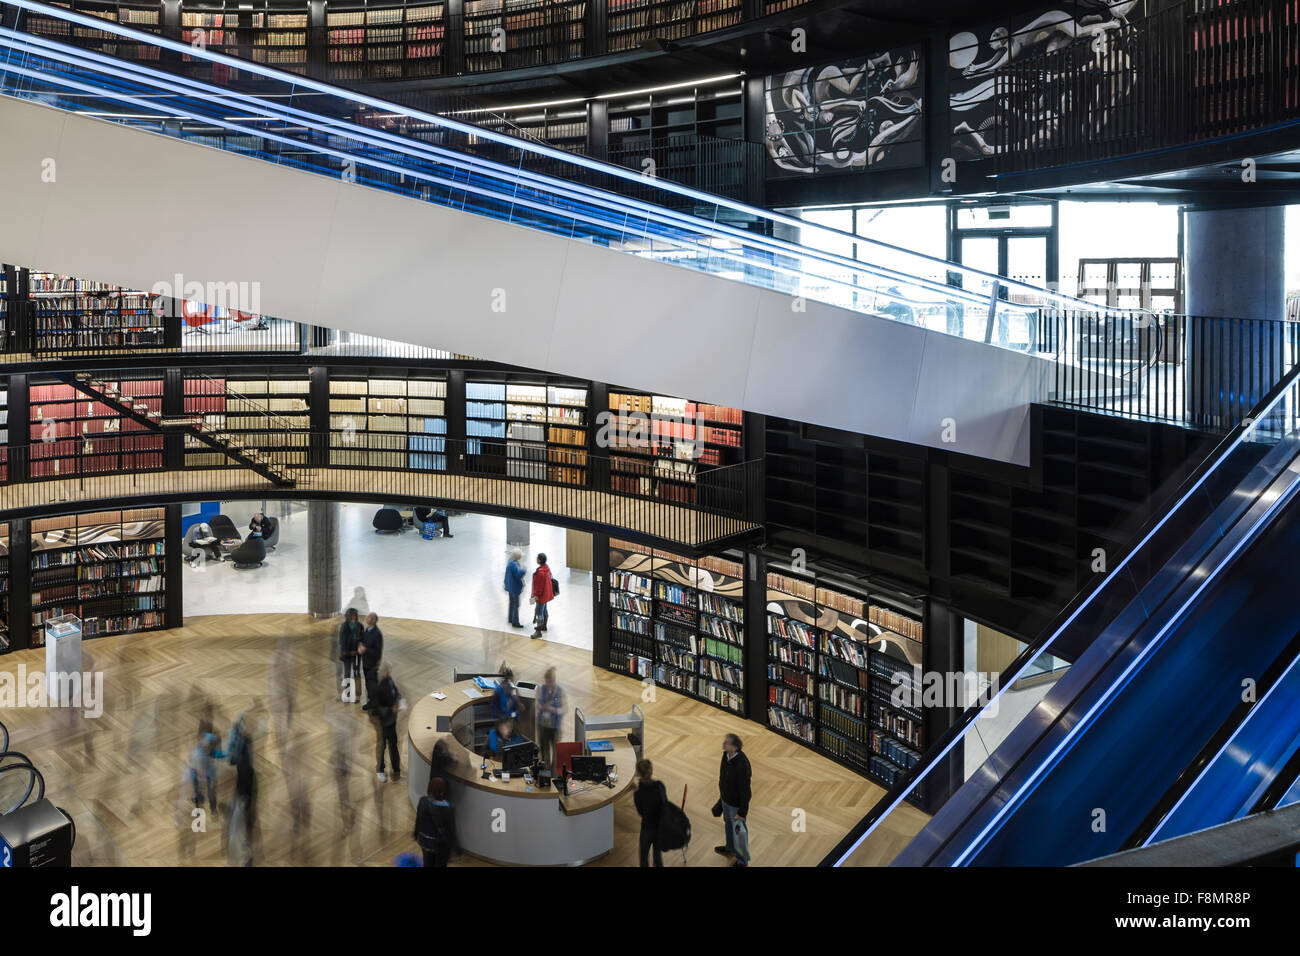 Birmingham-Bibliothek. Innenansicht der Stadtbibliothek. Gebogene Wände mit Bücherregalen und beleuchtete Fahrtreppen ausgekleidet. Zeitgenössische Architektur und Design. Stockfoto